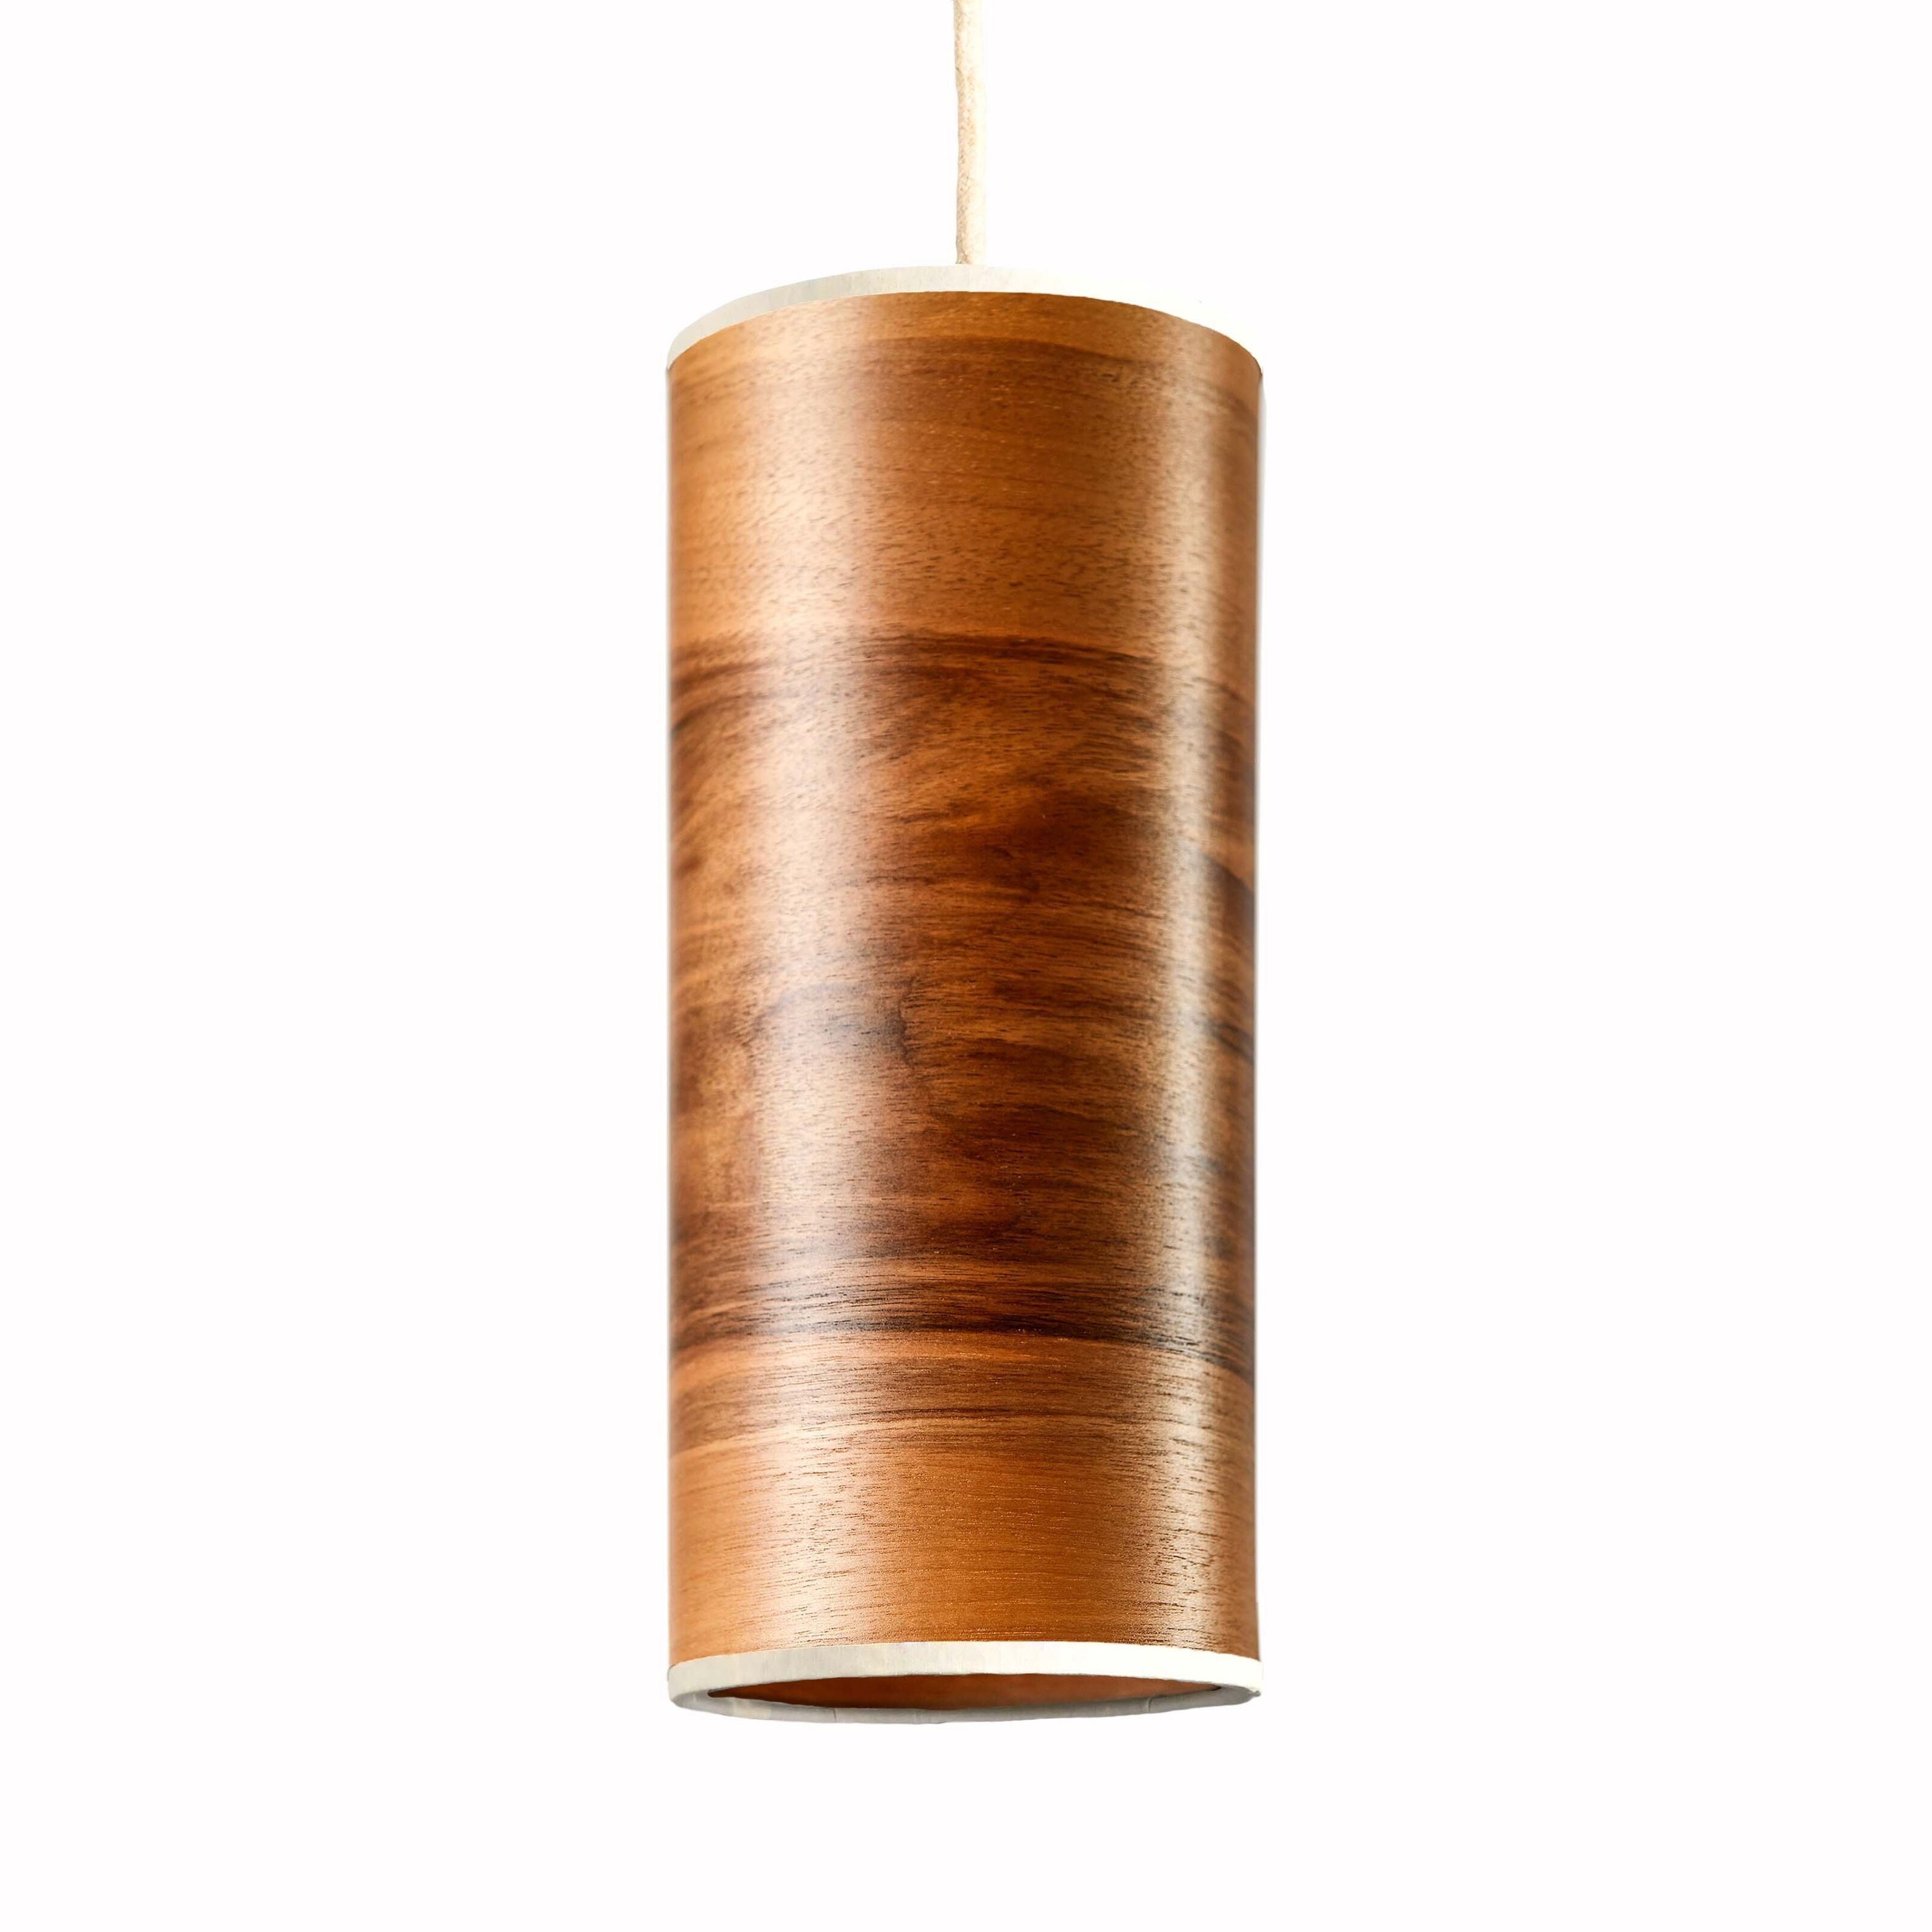 Design Leuchten aus Holz von LeuchtNatur